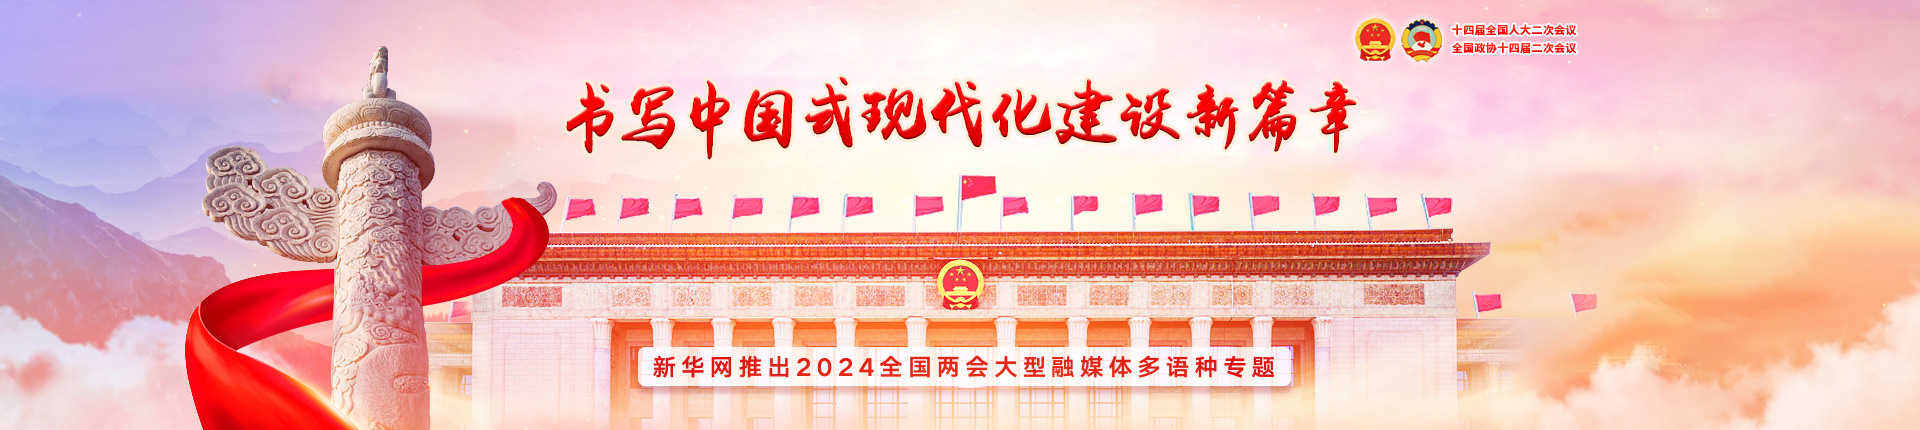 新華網推出2024年全國兩會大型融媒體多語種專題